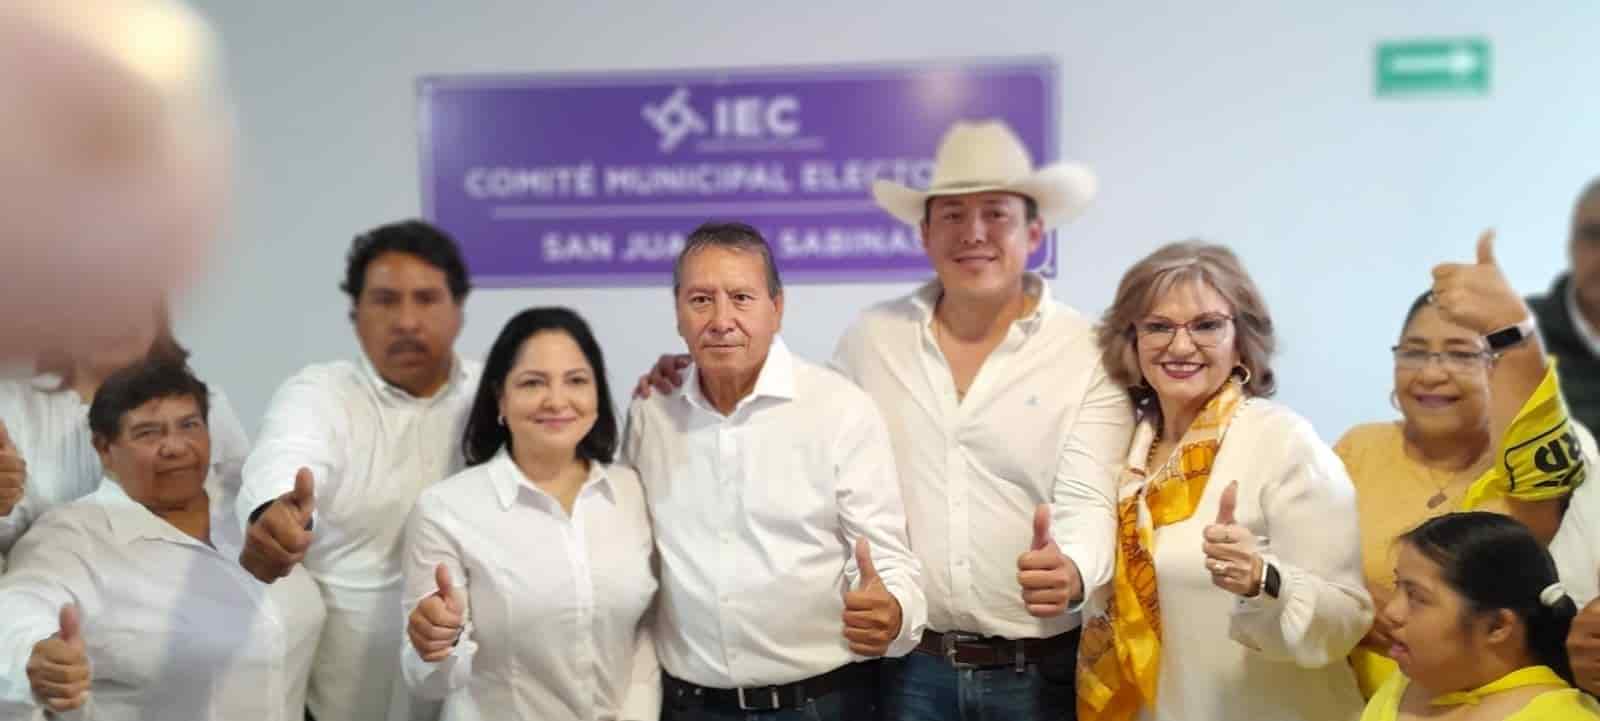 Oscar Ríos se registra Ante Instituto Electoral